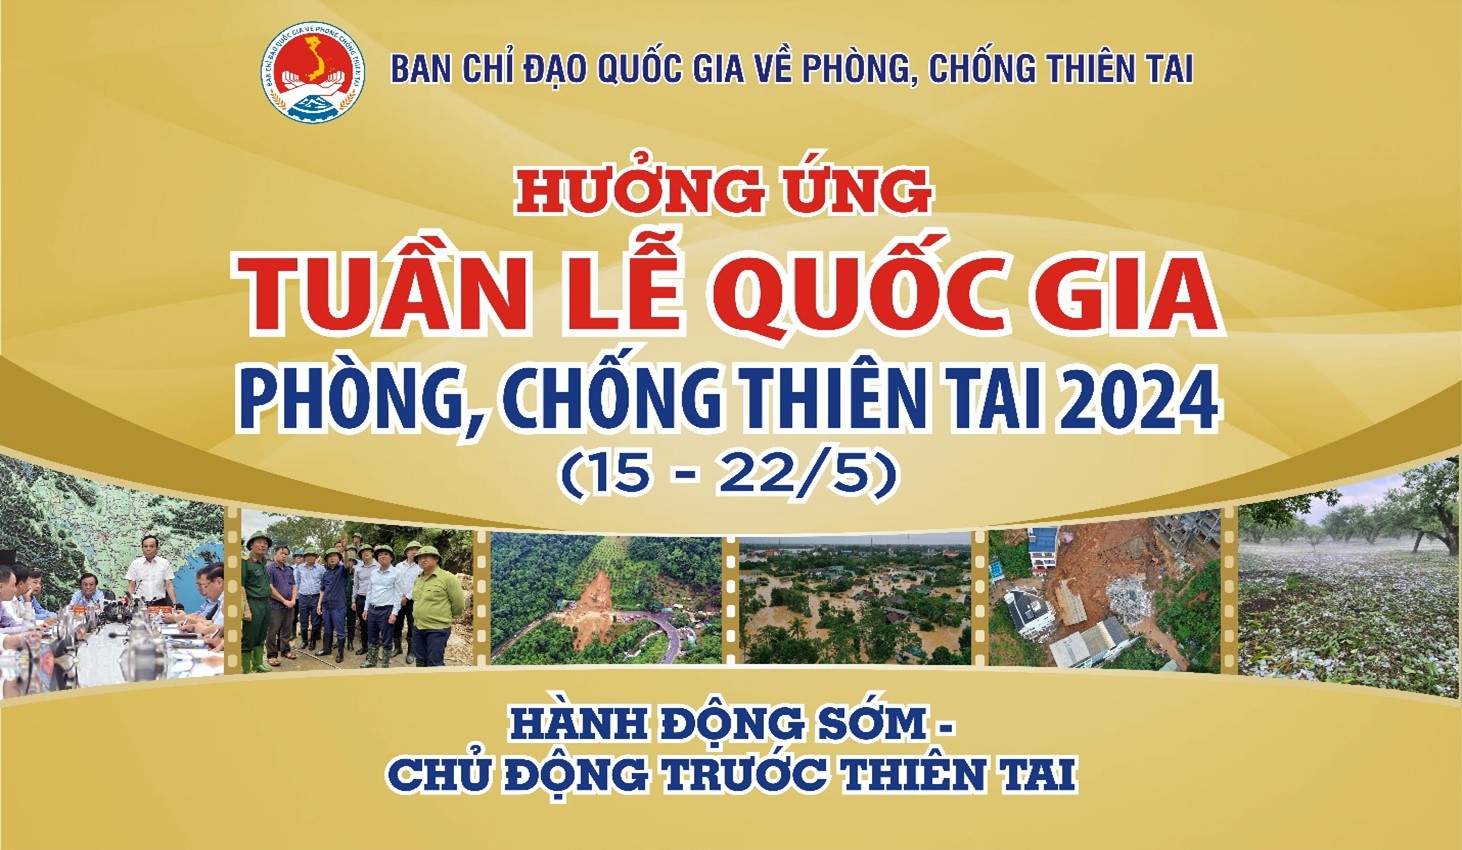 Tổng công ty Lâm nghiệp Việt Nam hưởng ứng tuần lễ Quốc gia phòng, chống thiên tai năm 2024